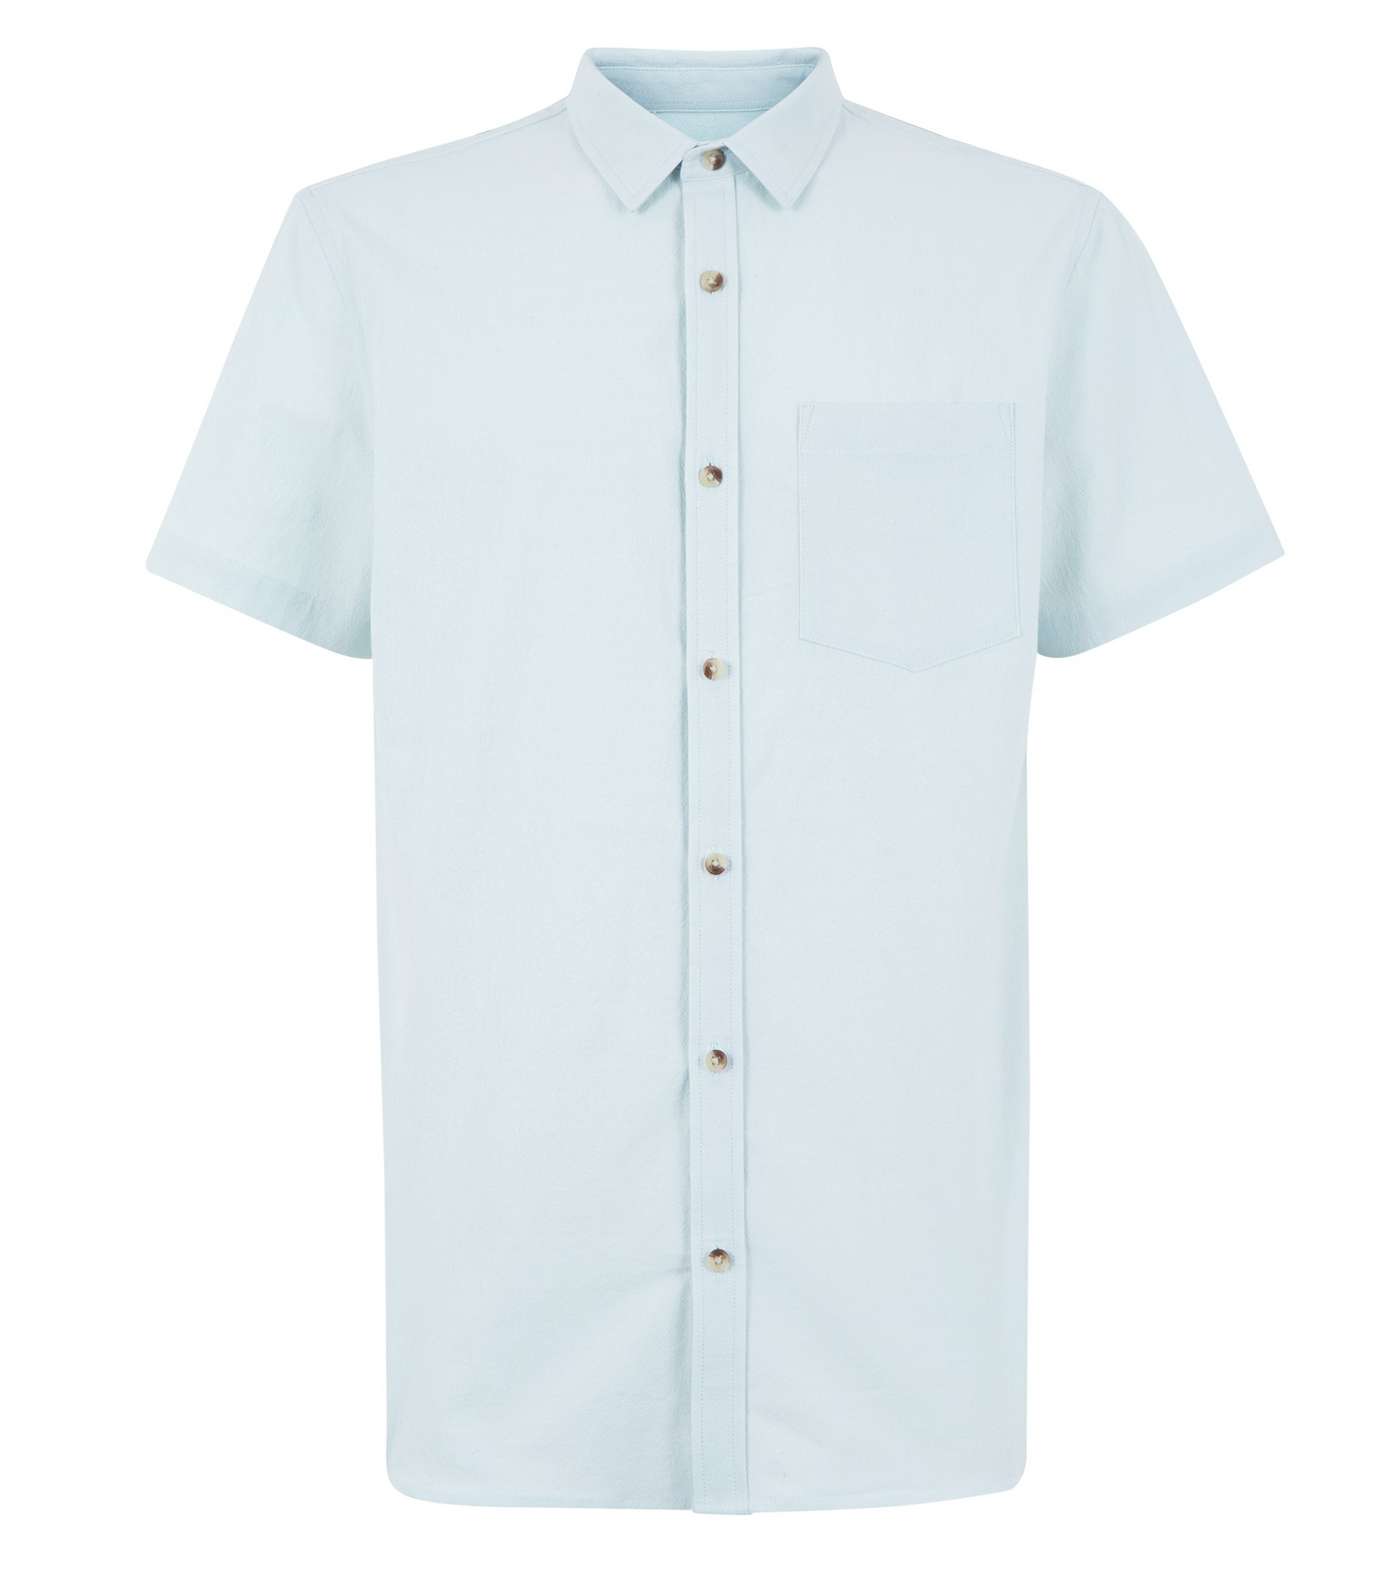 Mint Green Textured Short Sleeve Shirt Image 4